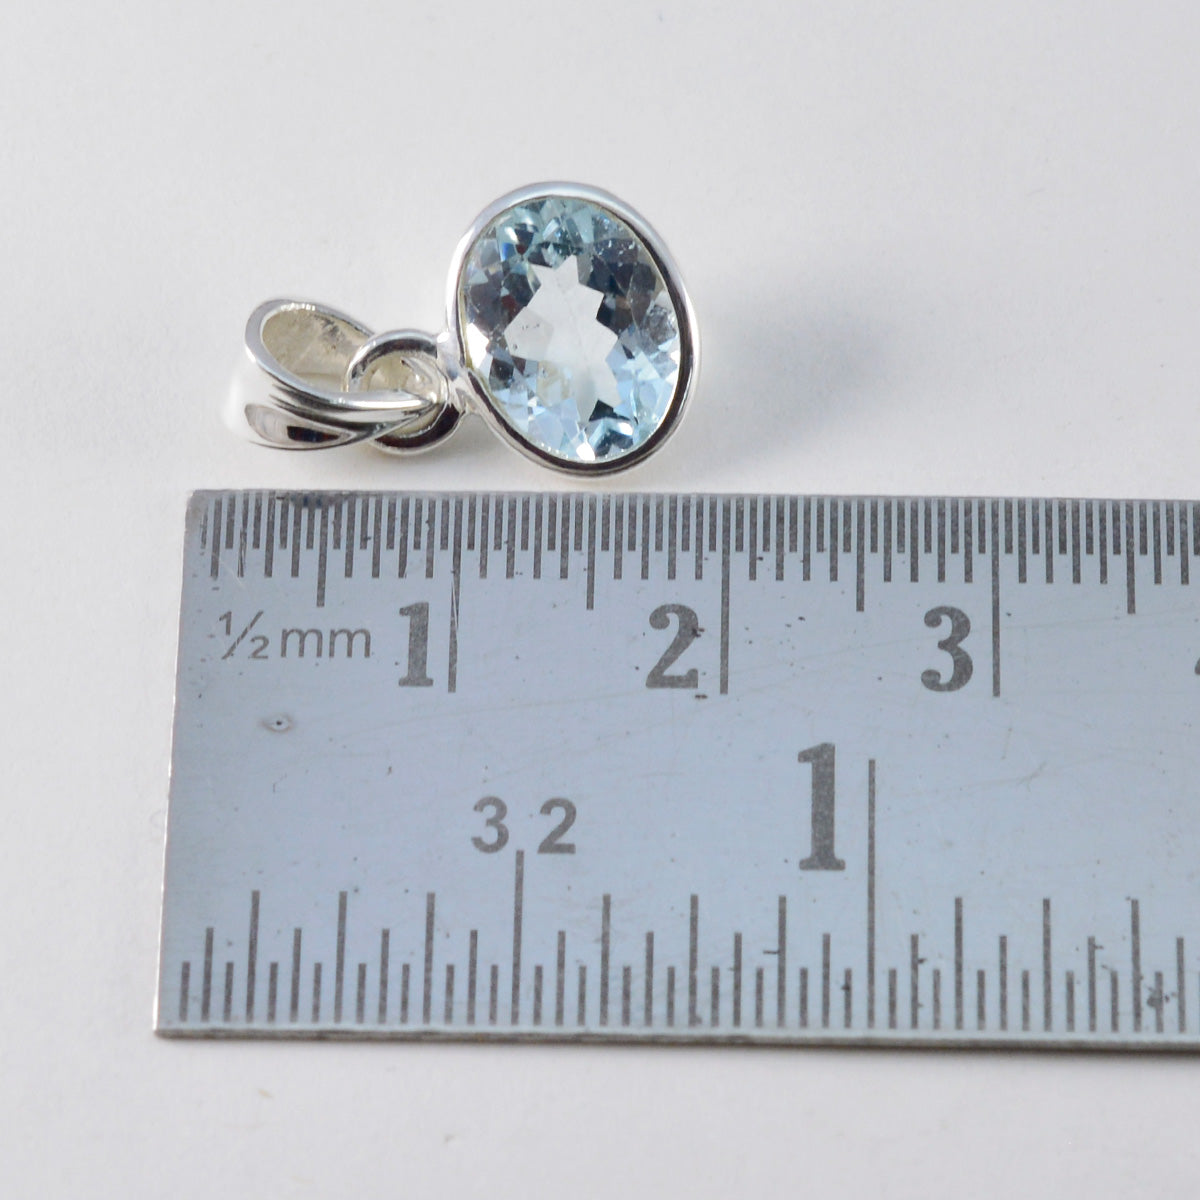 riyo riktiga ädelstenar oval fasetterad blå blå topas silverhänge present för förlovning